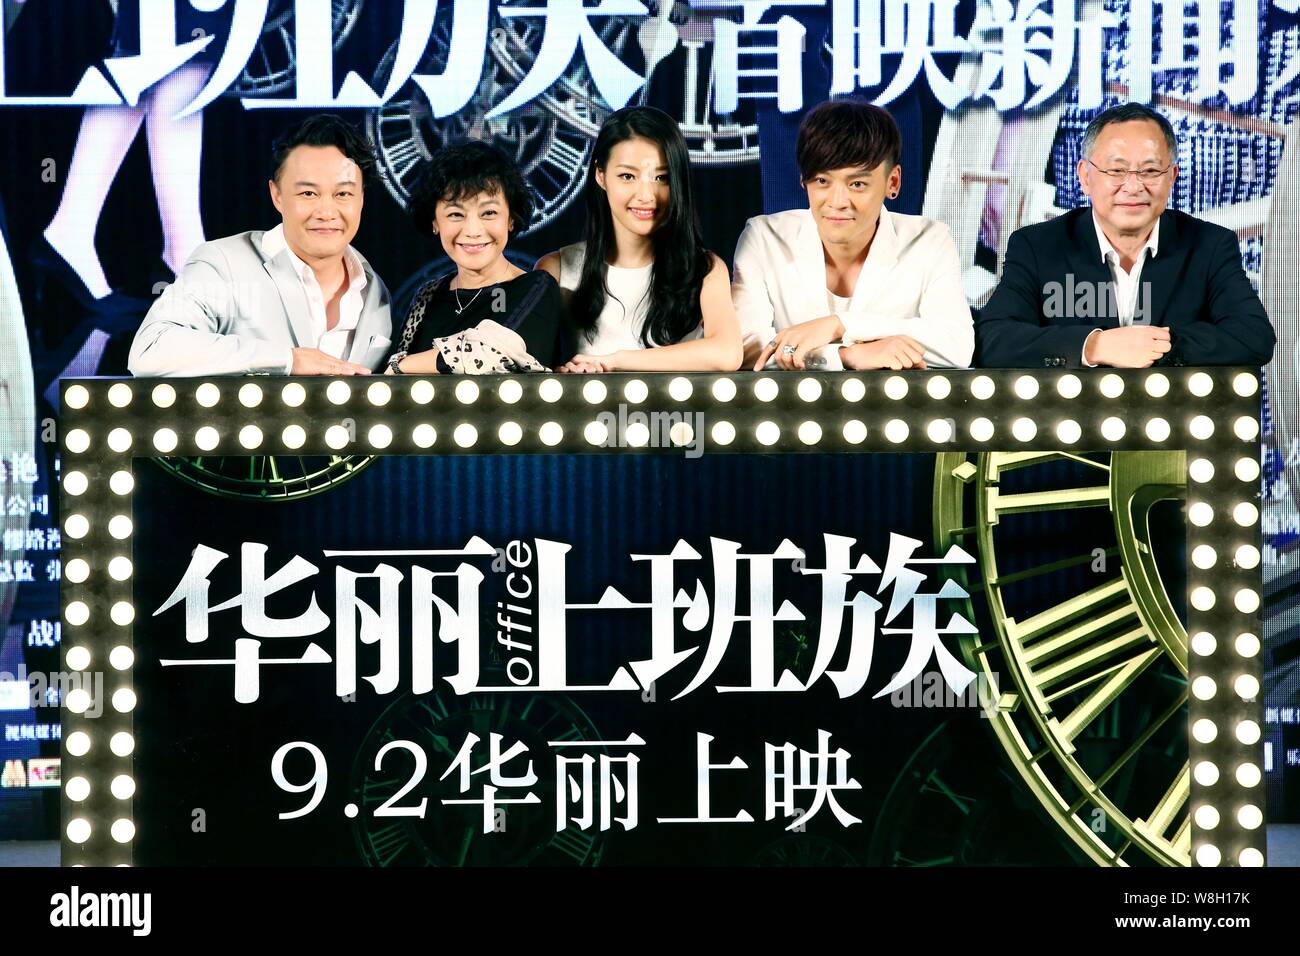 (From left) Hong Kong singer and actor Eason Chan, Taiwanese actress Sylvia Chang, Chinese actress Lang Yueting, actor Wang Ziyi and Hong Kong directo Stock Photo